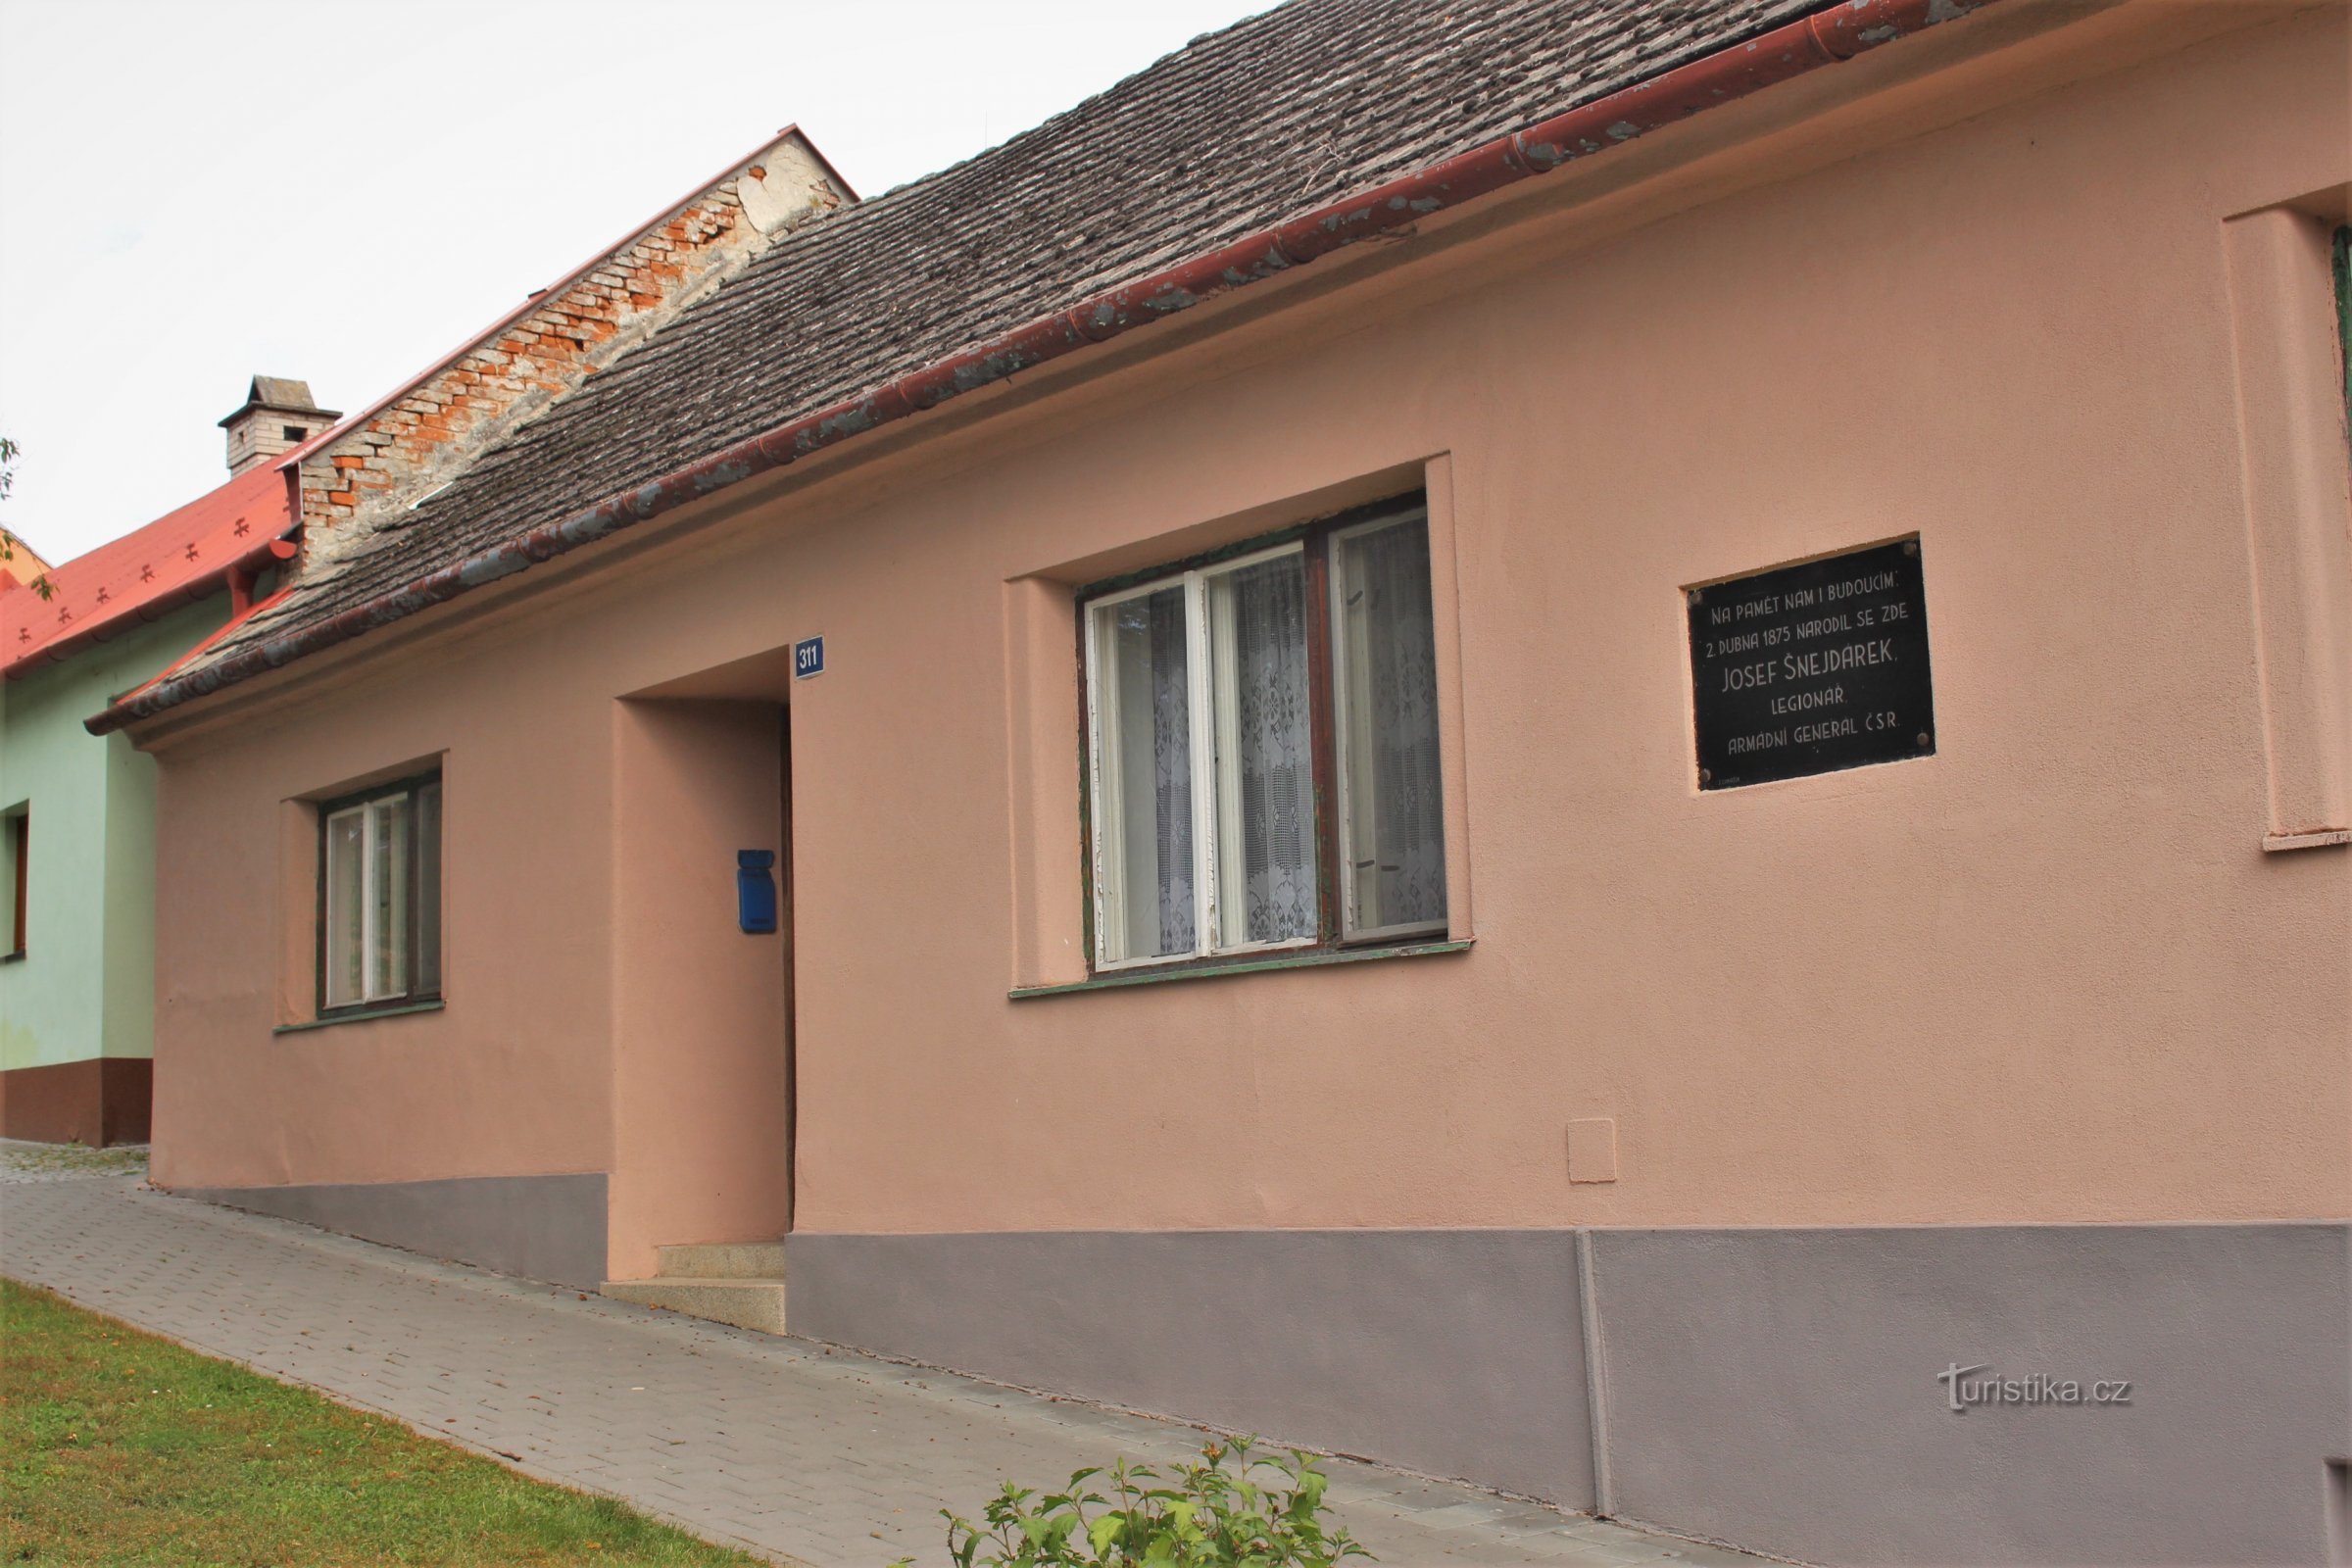 Šnejdárek tábornok szülőhelye